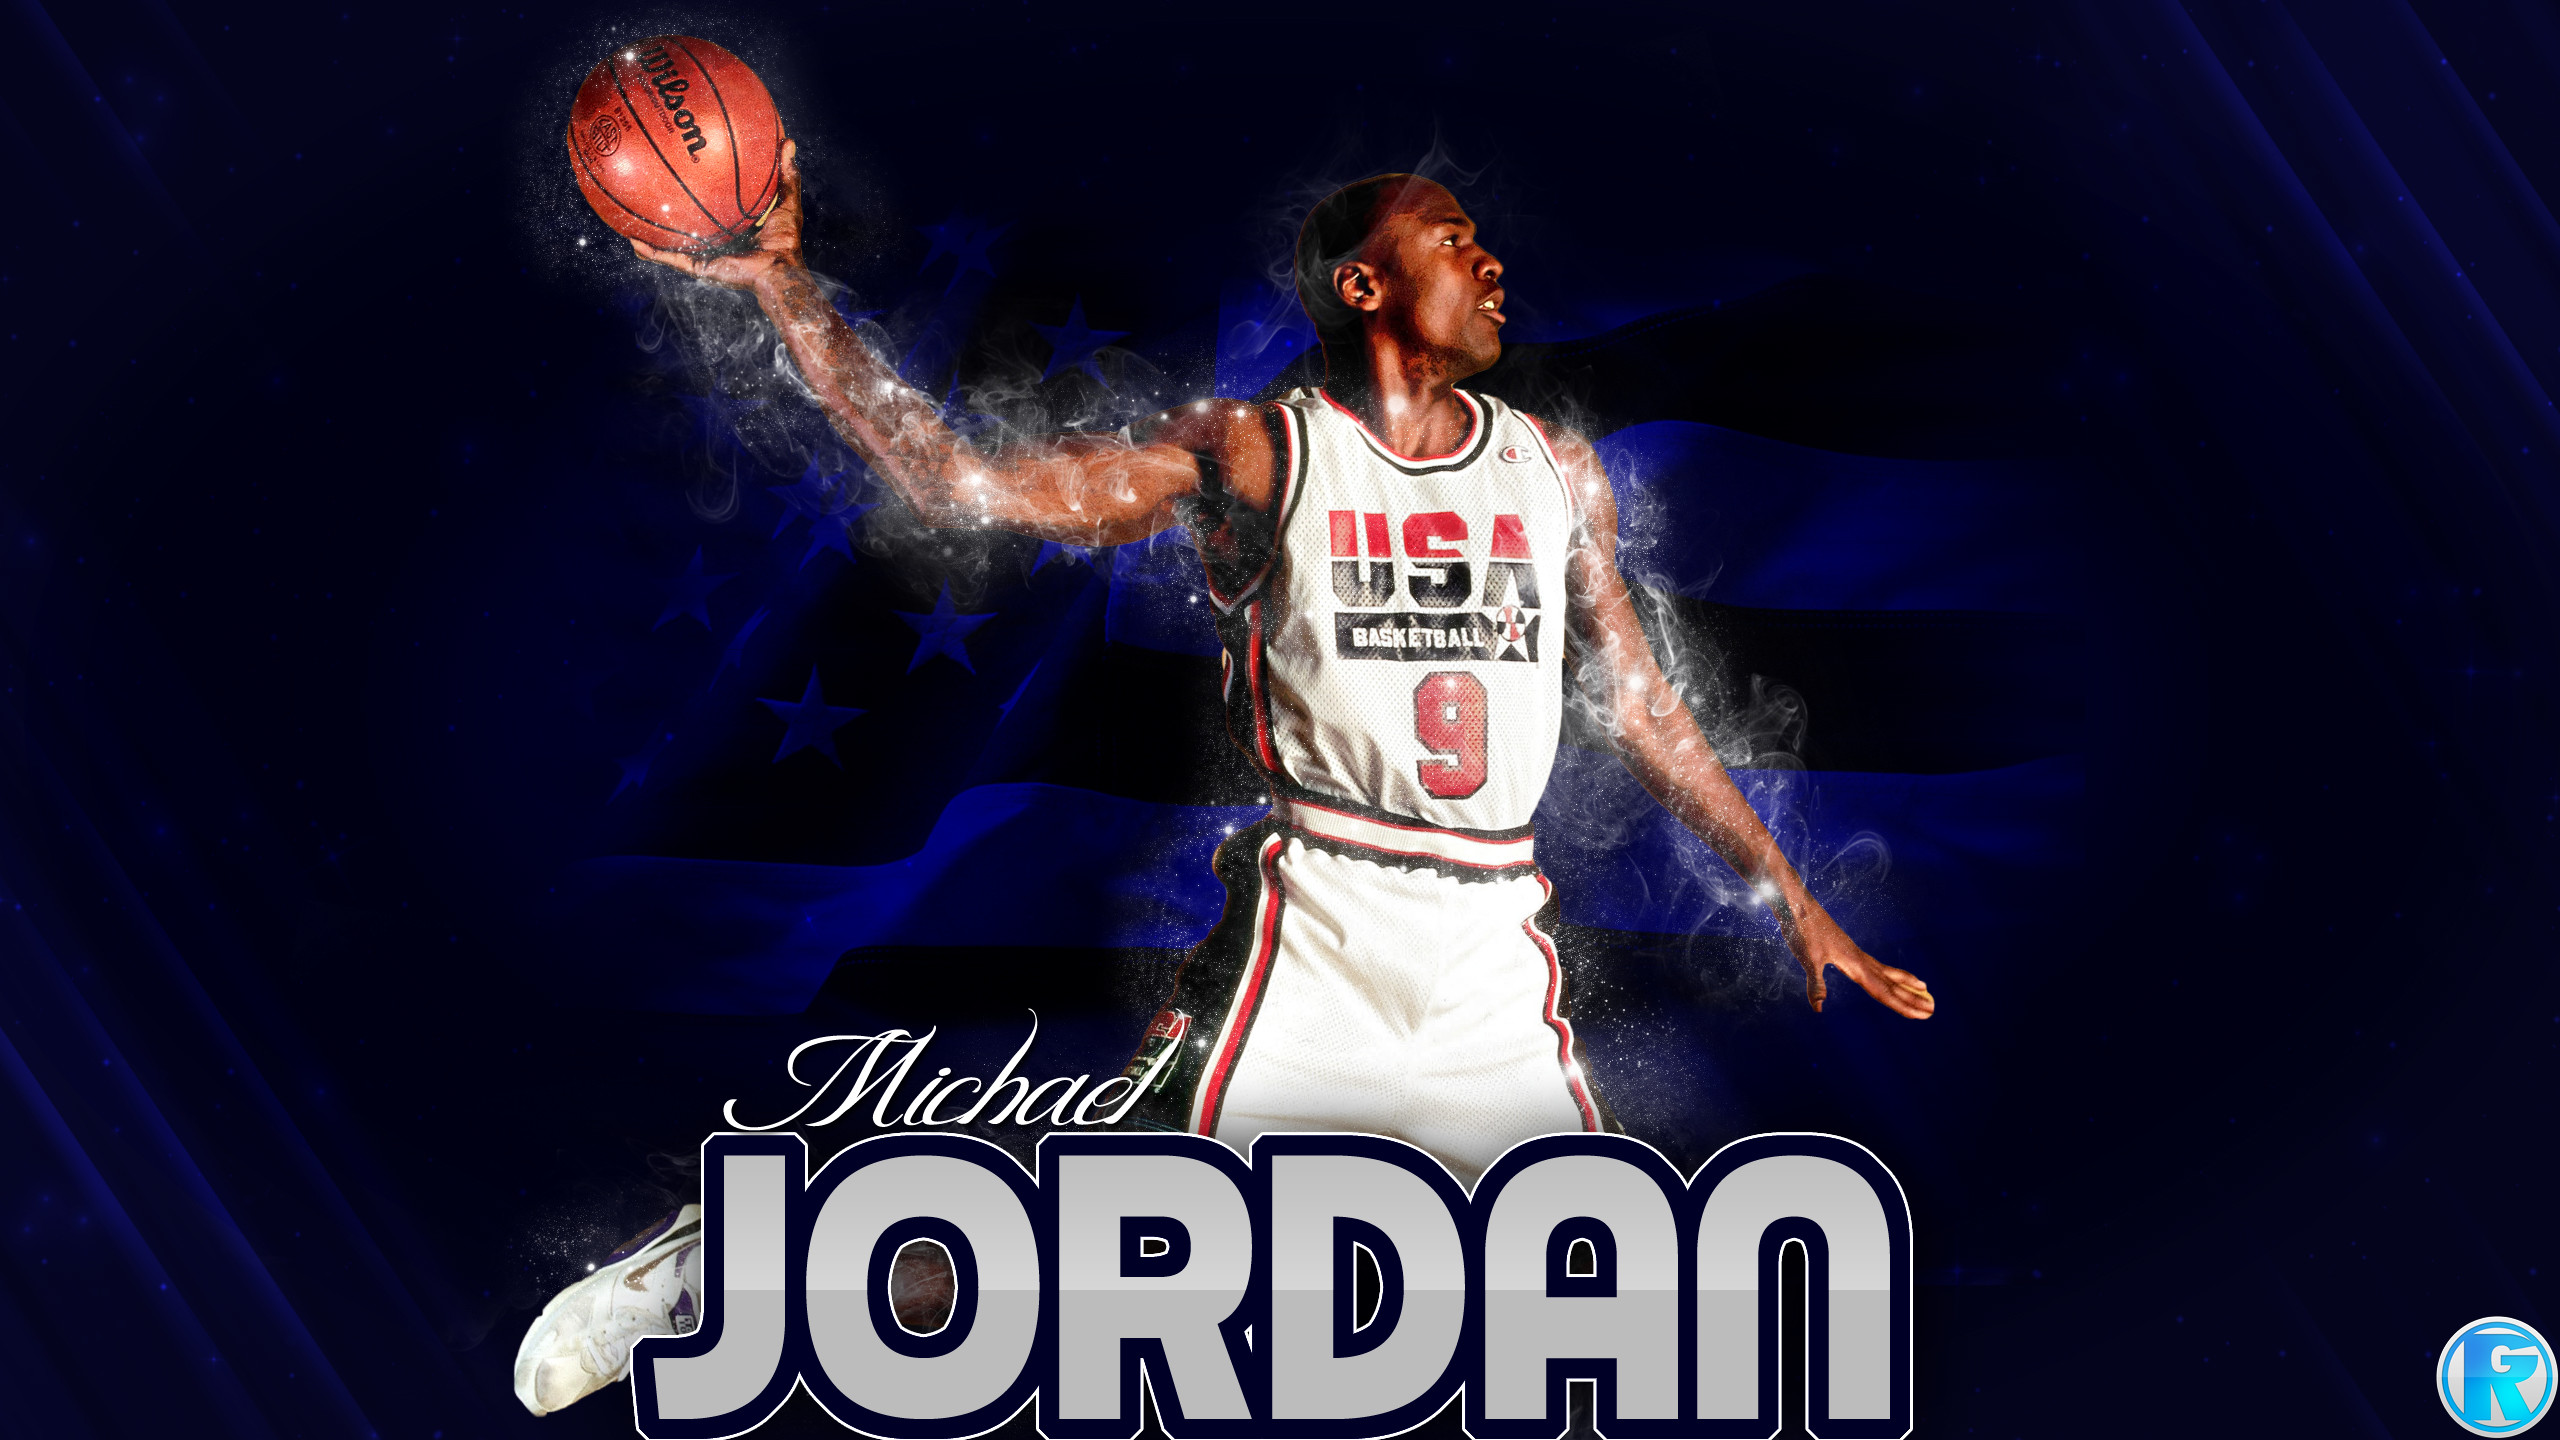 2560x1440 Michael Jordan Images.